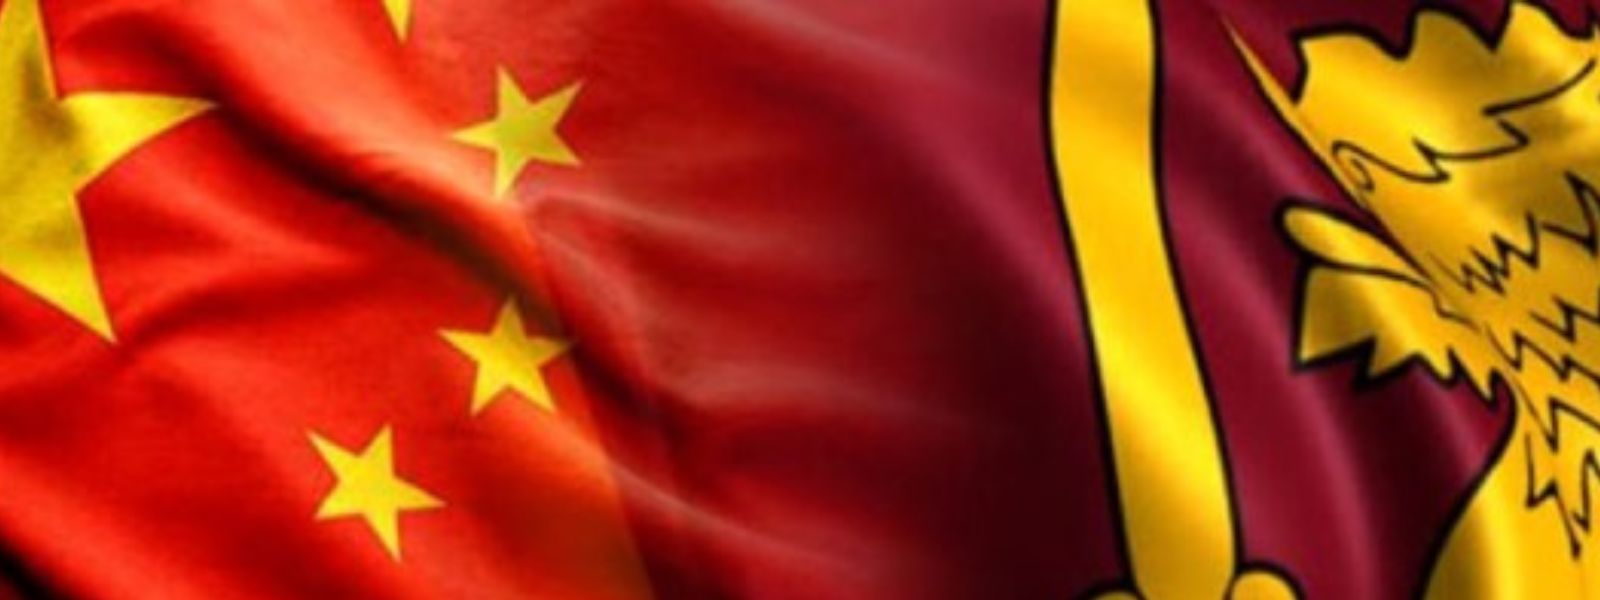 SL, China Diplomatic Consultations Next Week